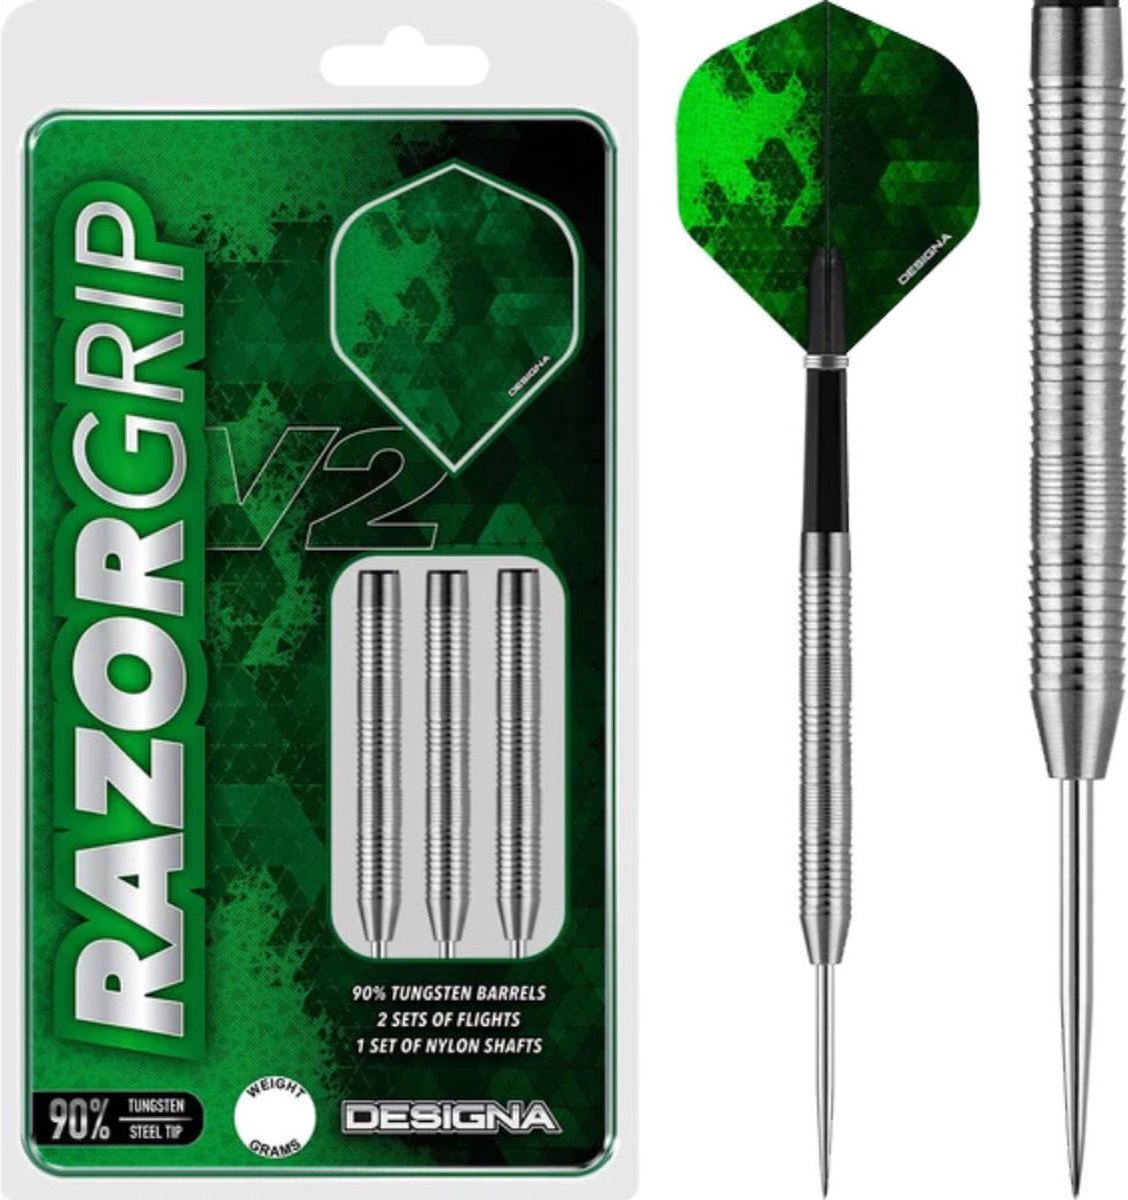 Designa Darts Razor Grip V2 Dual Micro Grip 22 gram